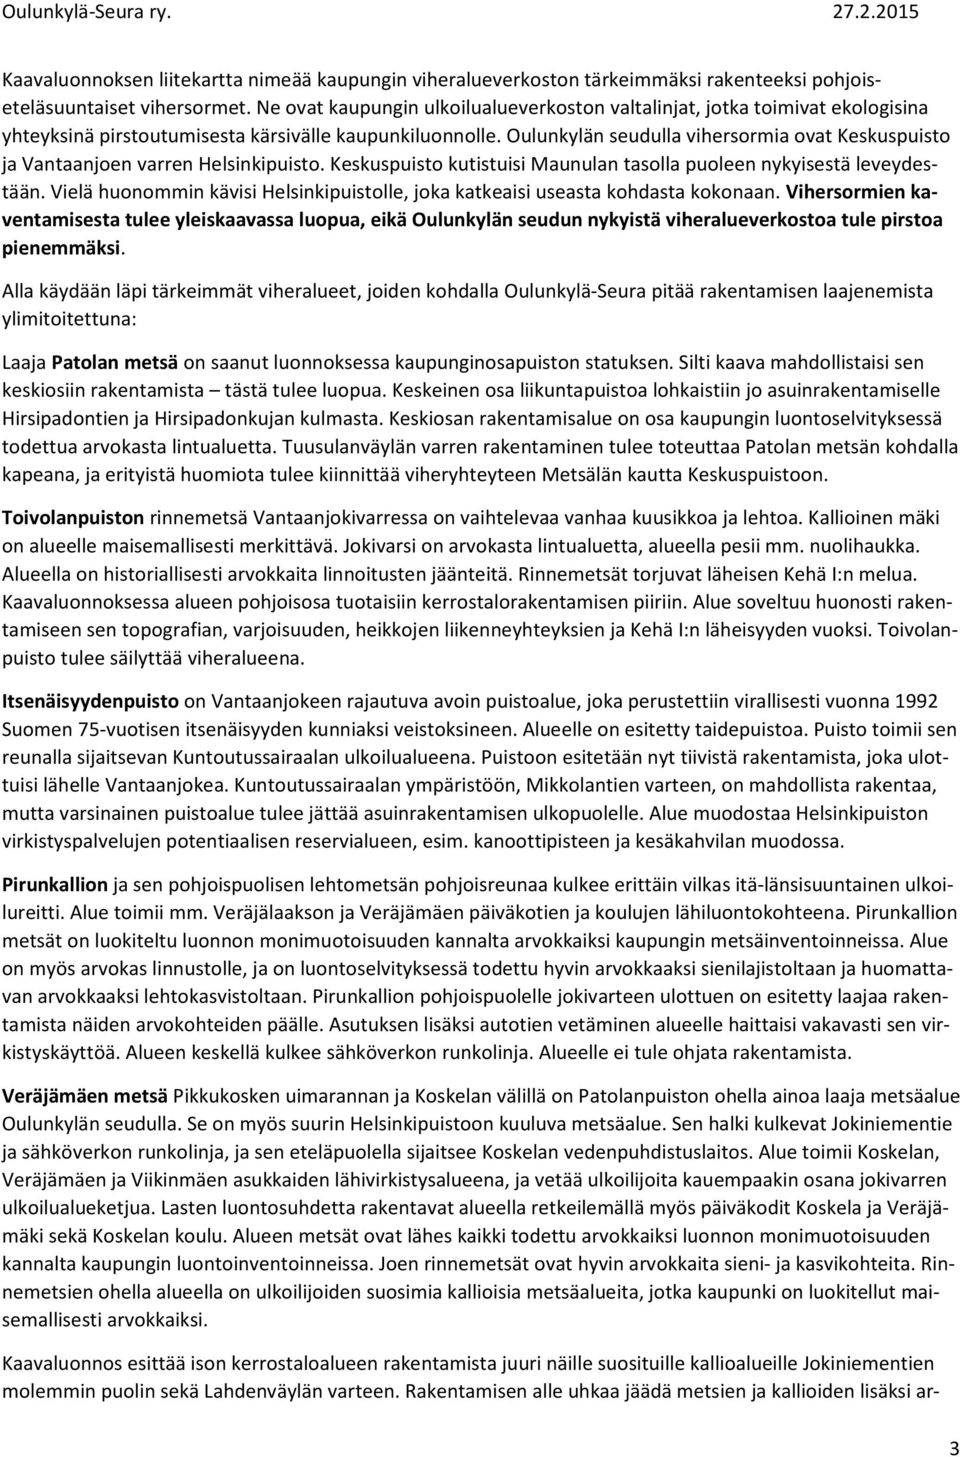 Oulunkylän seudulla vihersormia ovat Keskuspuisto ja Vantaanjoen varren Helsinkipuisto. Keskuspuisto kutistuisi Maunulan tasolla puoleen nykyisestä leveydestään.